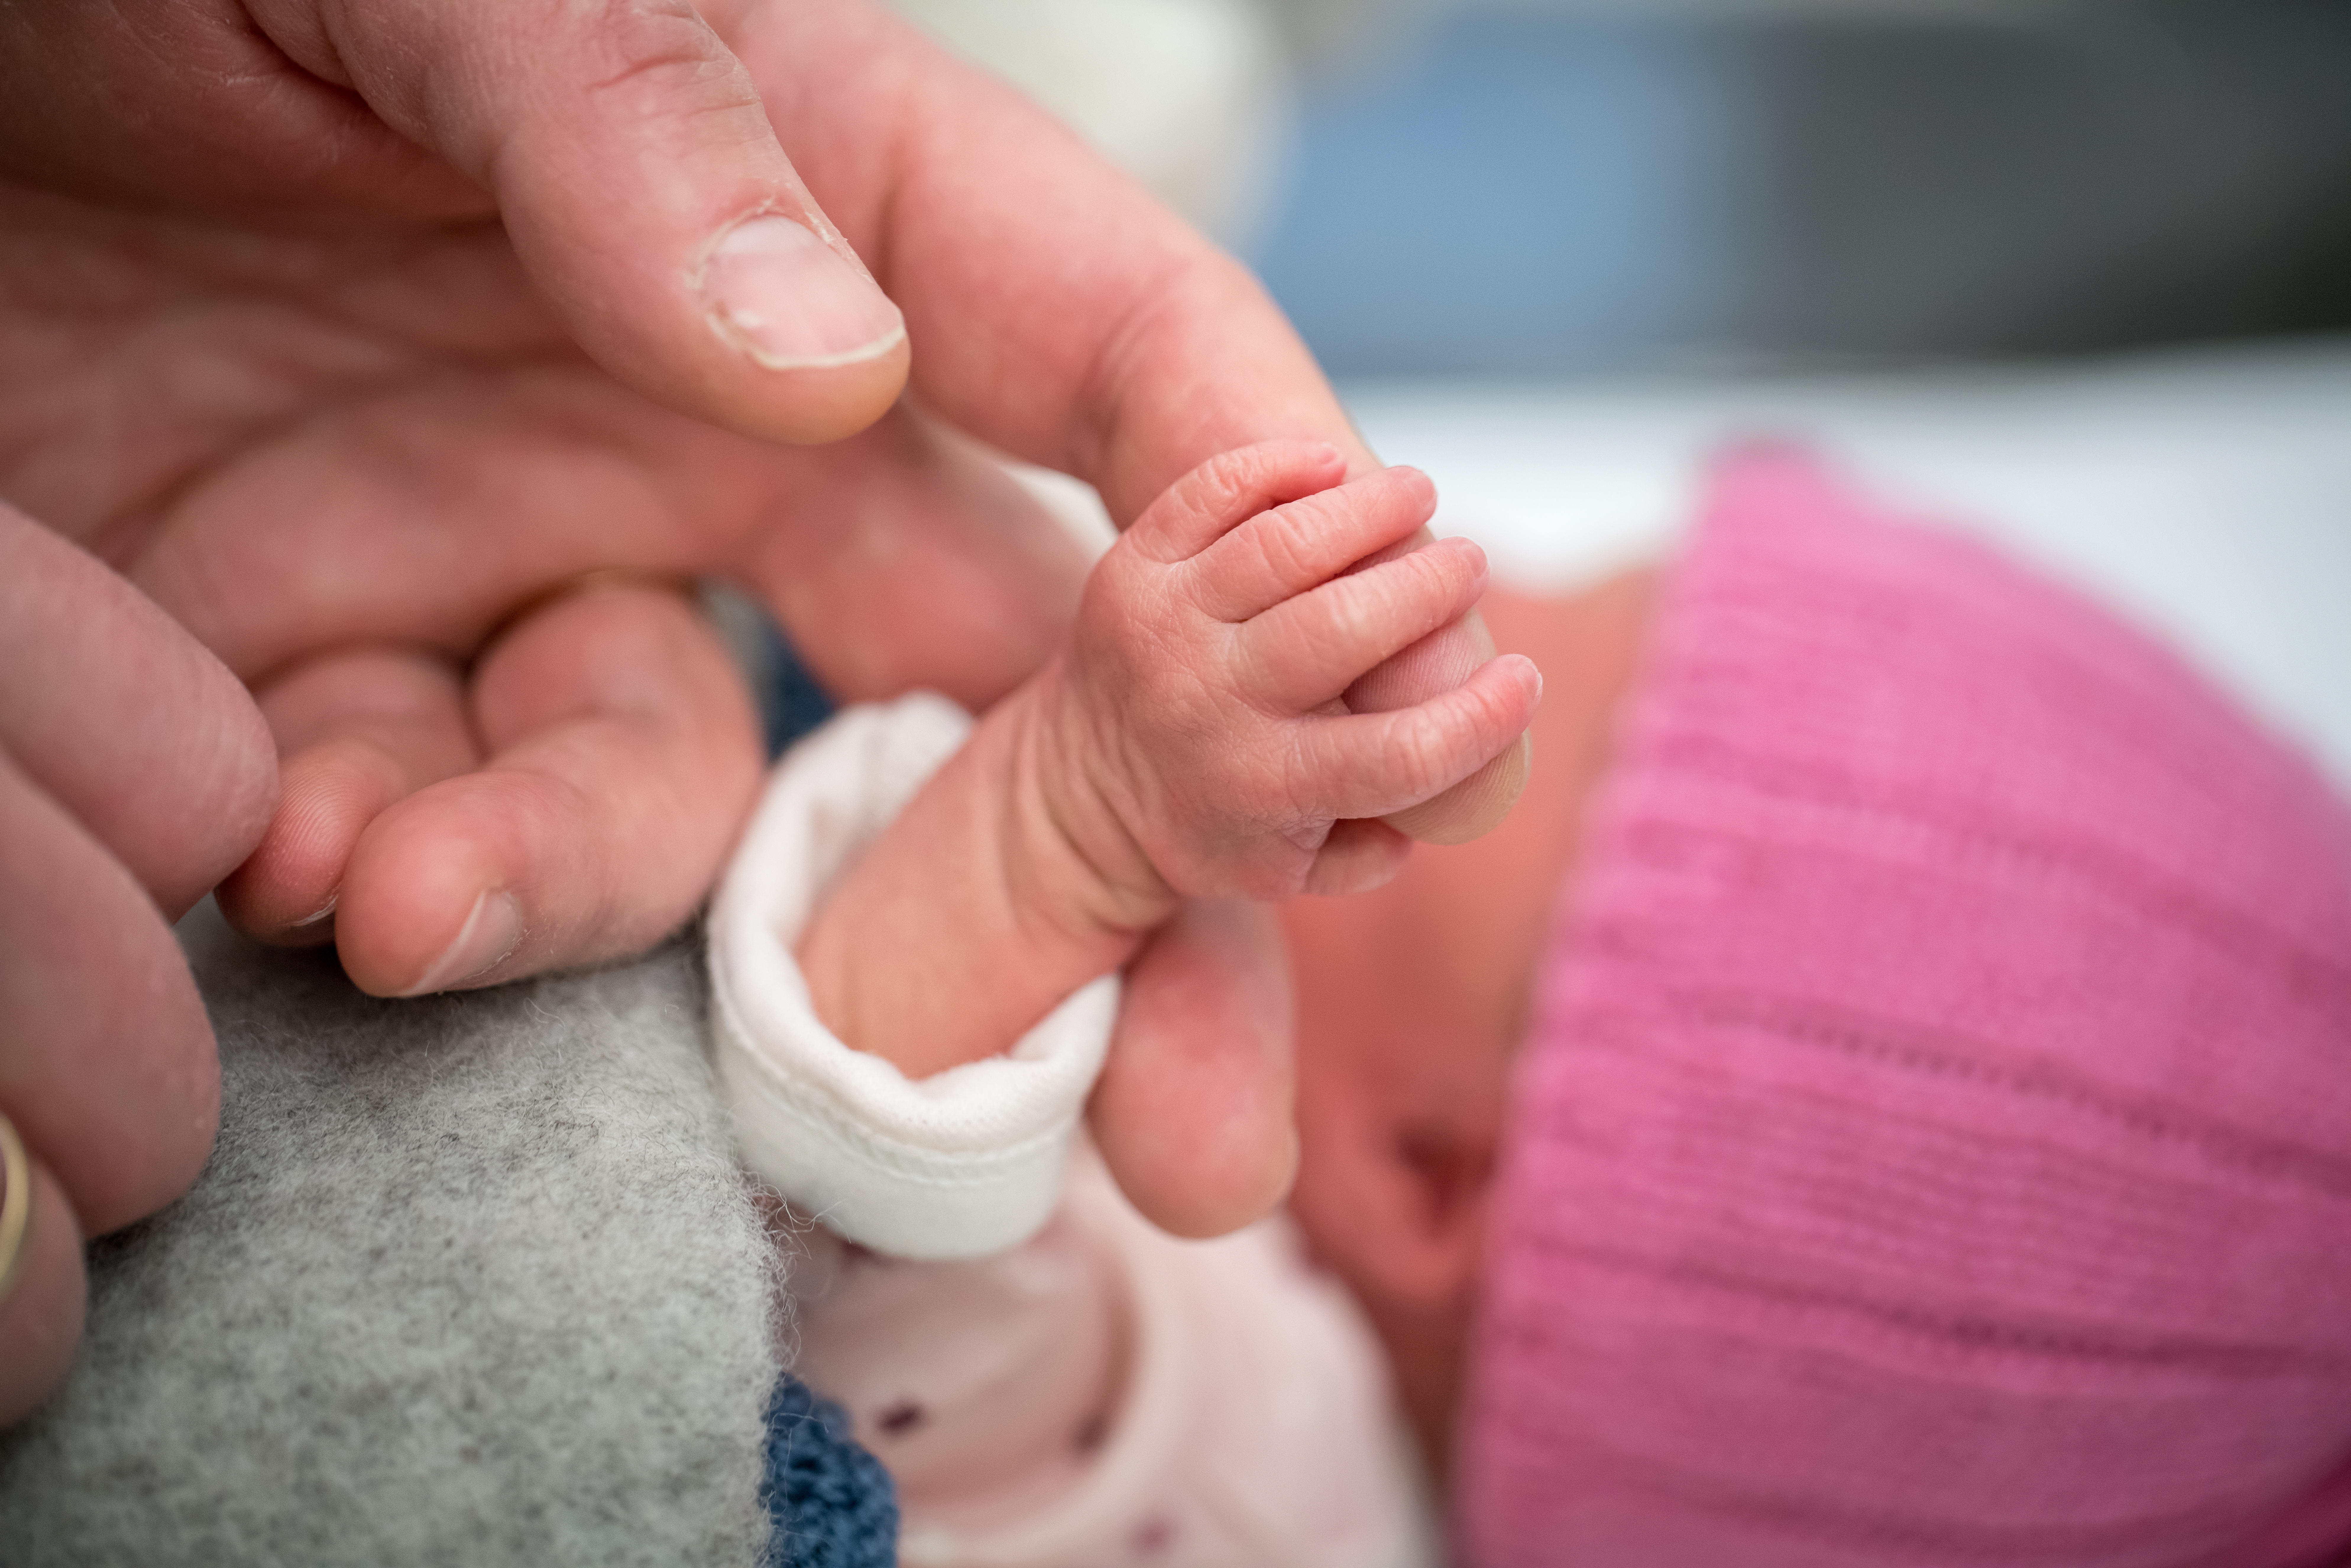 Amerikaanse baby geboren uit embryo na 27 jaar in vriezer kraamzorg